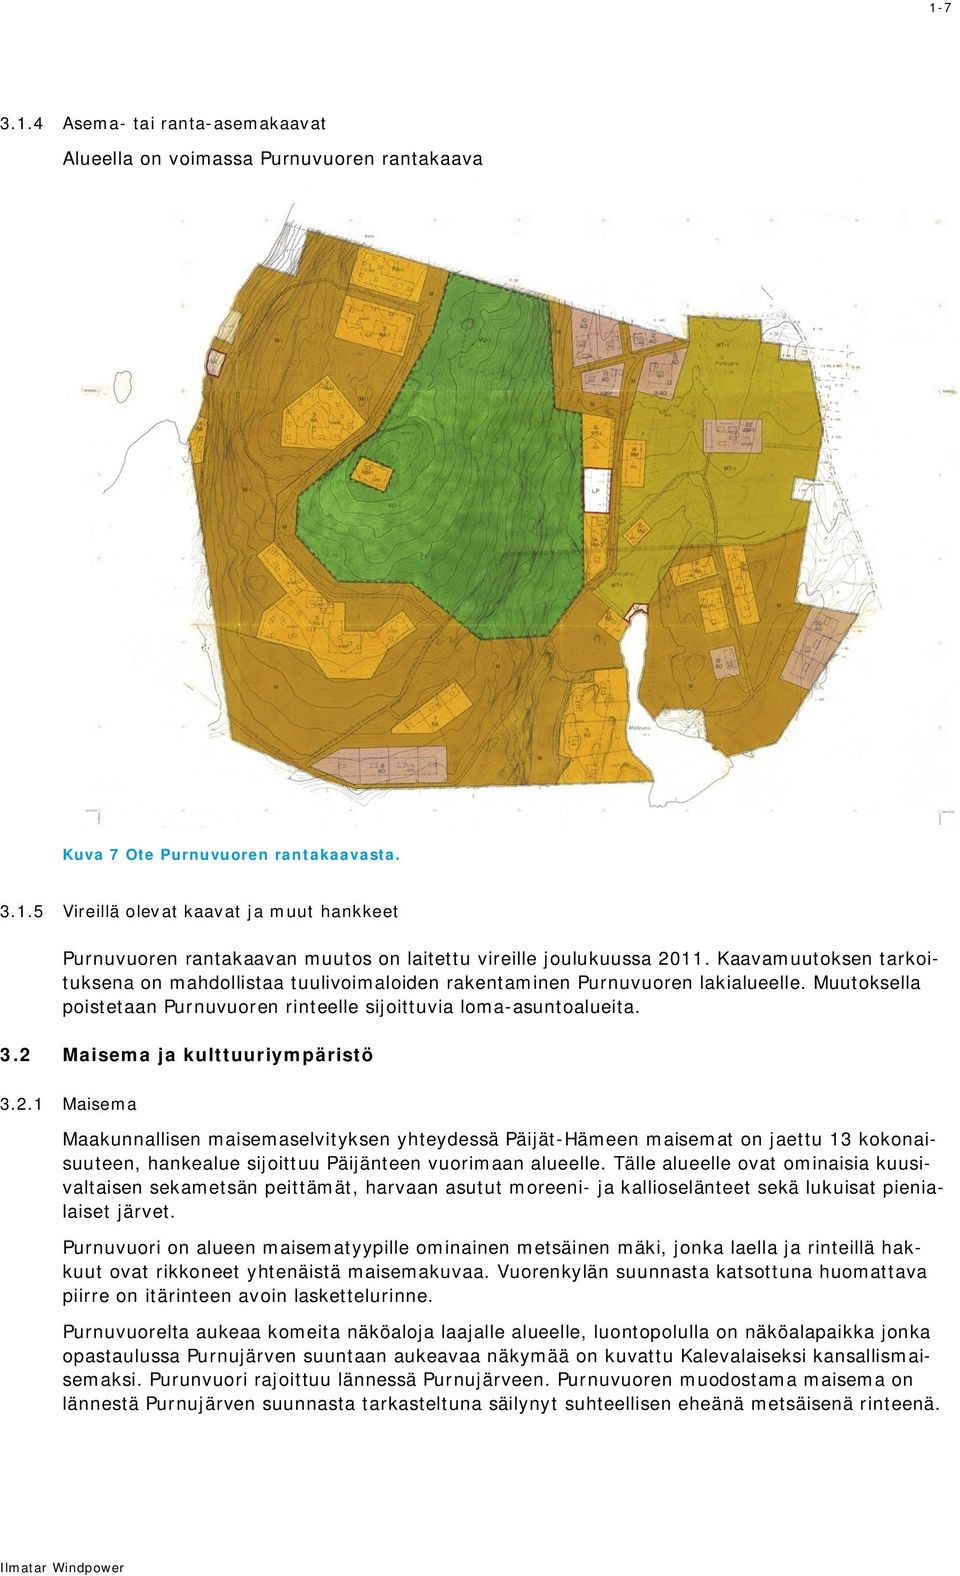 2 Maisema ja kulttuuriympäristö 3.2.1 Maisema Maakunnallisen maisemaselvityksen yhteydessä Päijät-Hämeen maisemat on jaettu 13 kokonaisuuteen, hankealue sijoittuu Päijänteen vuorimaan alueelle.